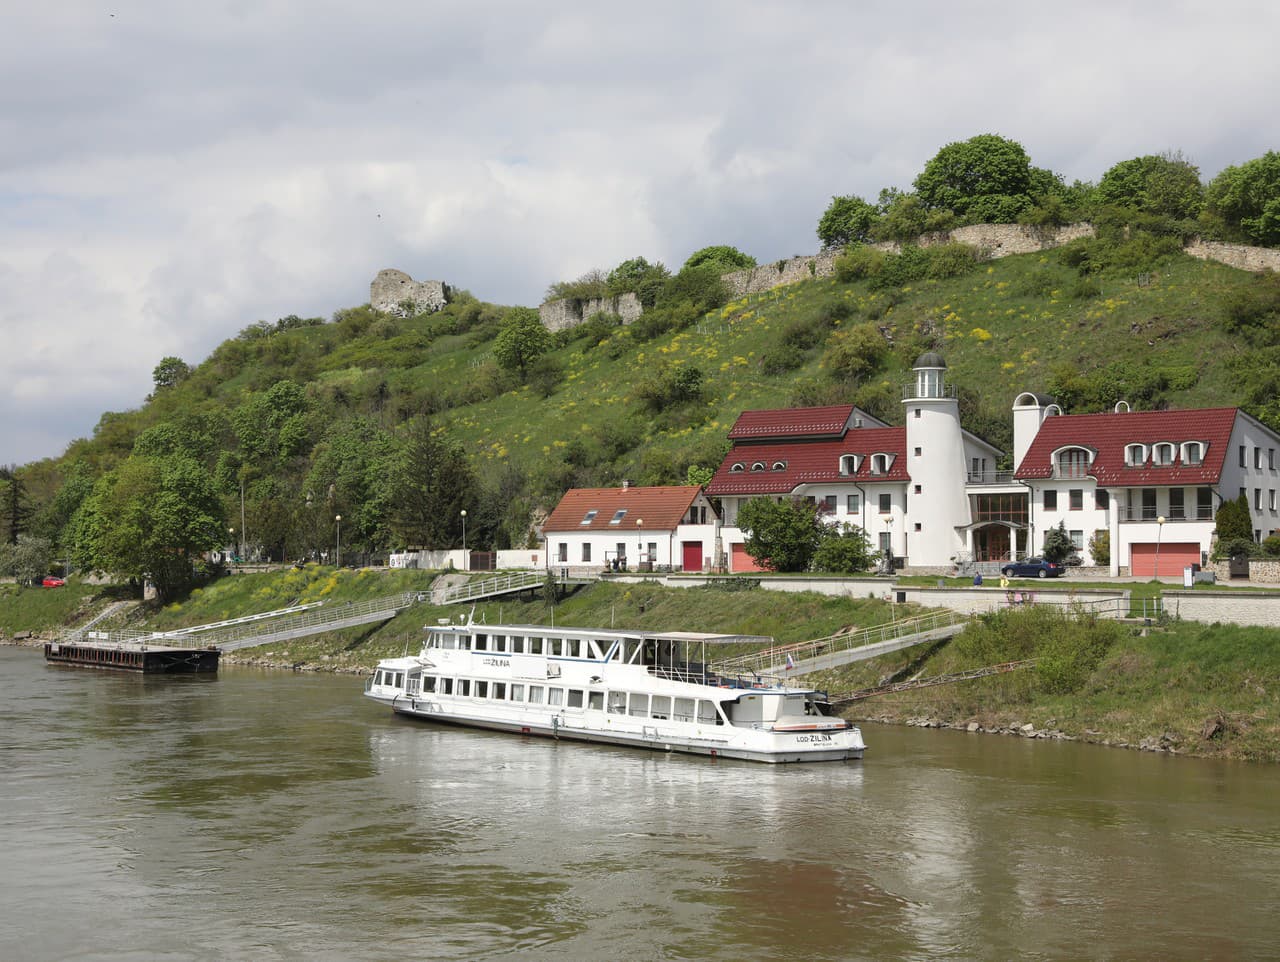 Otvorenie plavebnej sezóny na Dunaji
